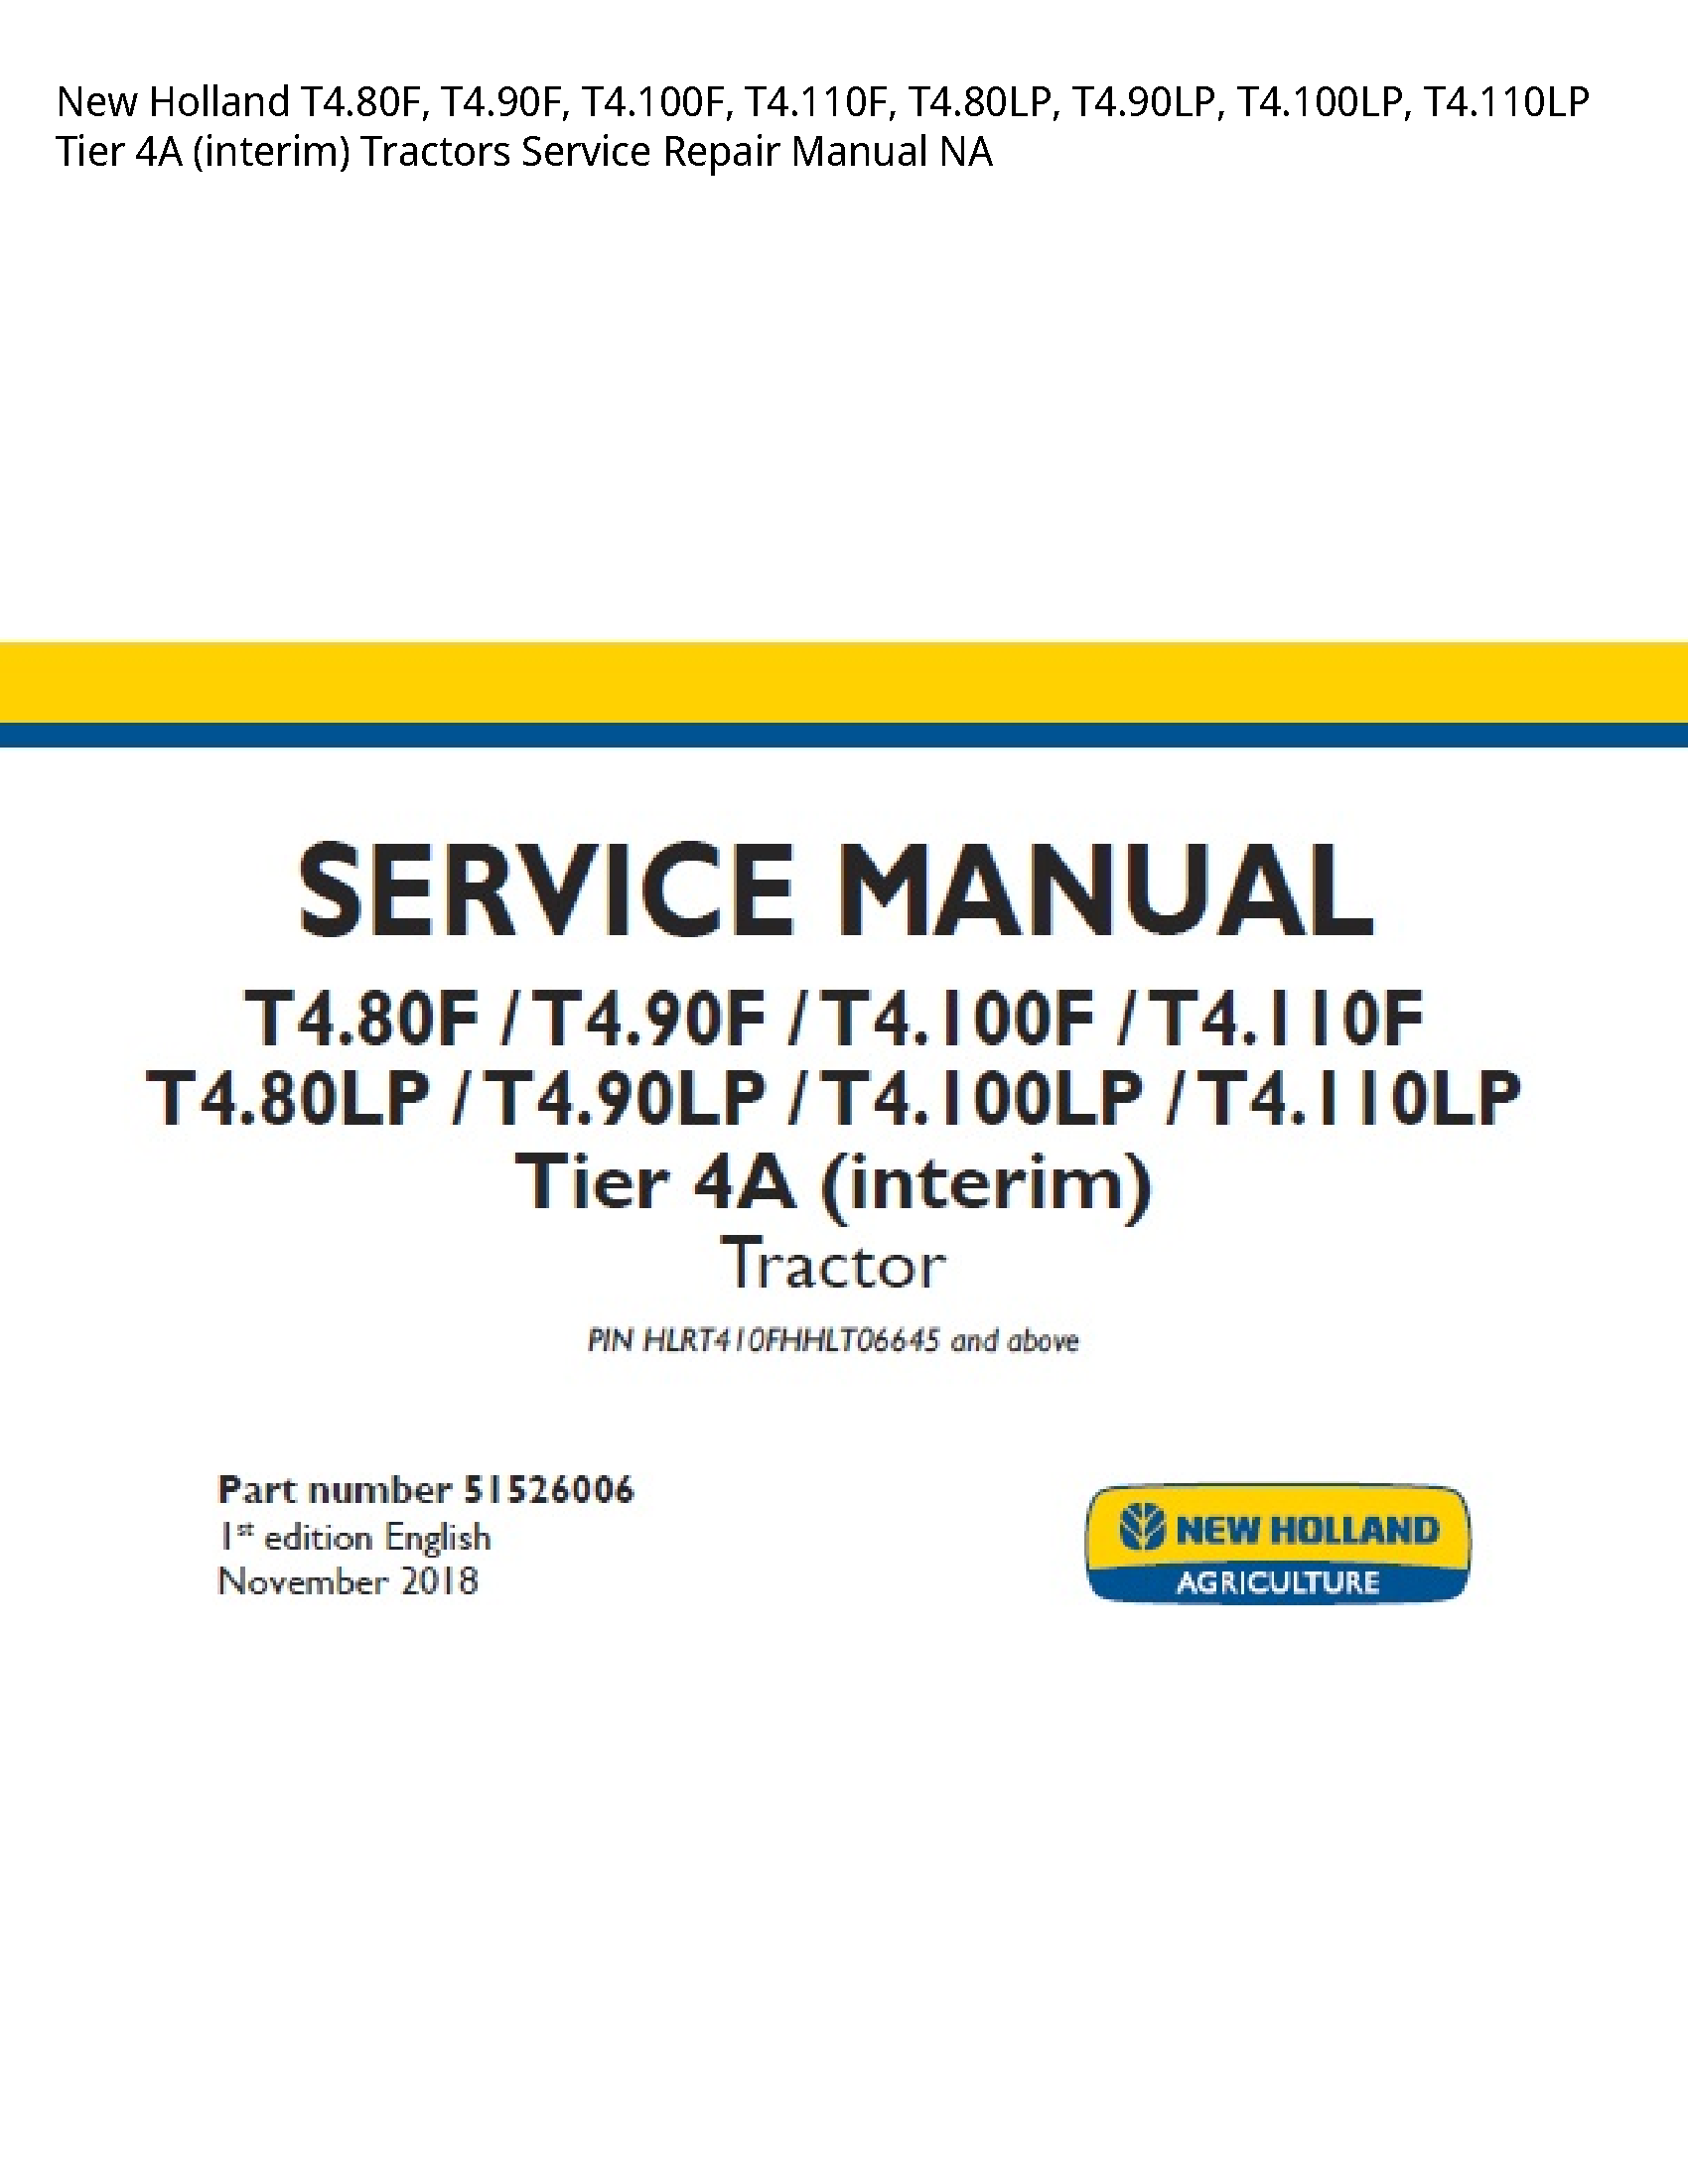 New Holland T4.80F Tier (interim) Tractors manual